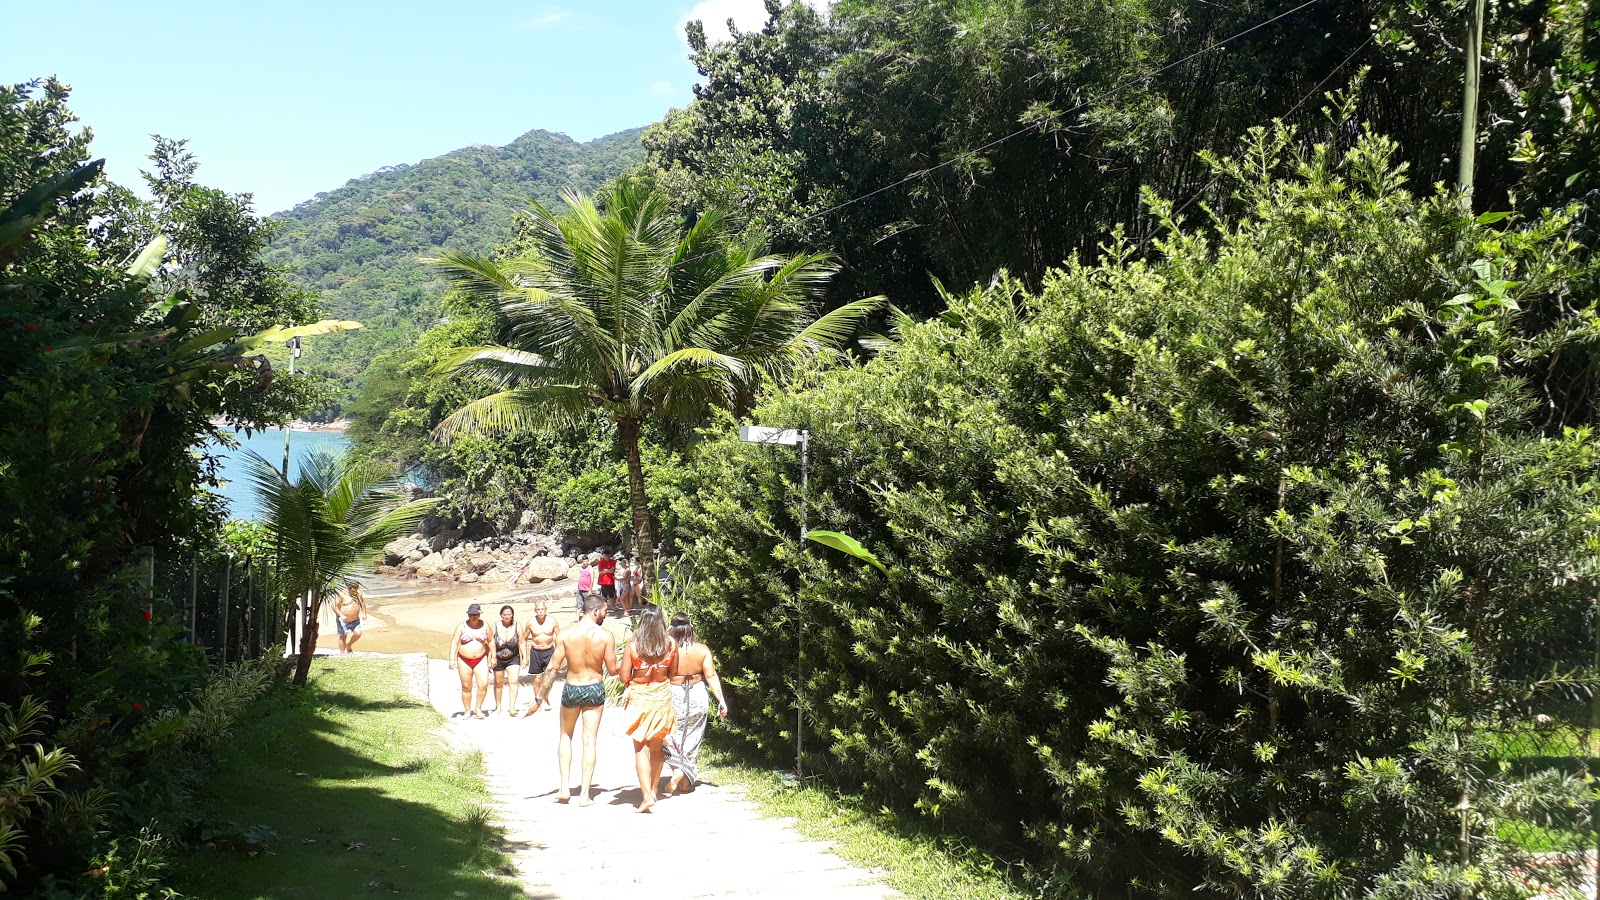 Foto von Praia da Santa Rita - beliebter Ort unter Entspannungskennern